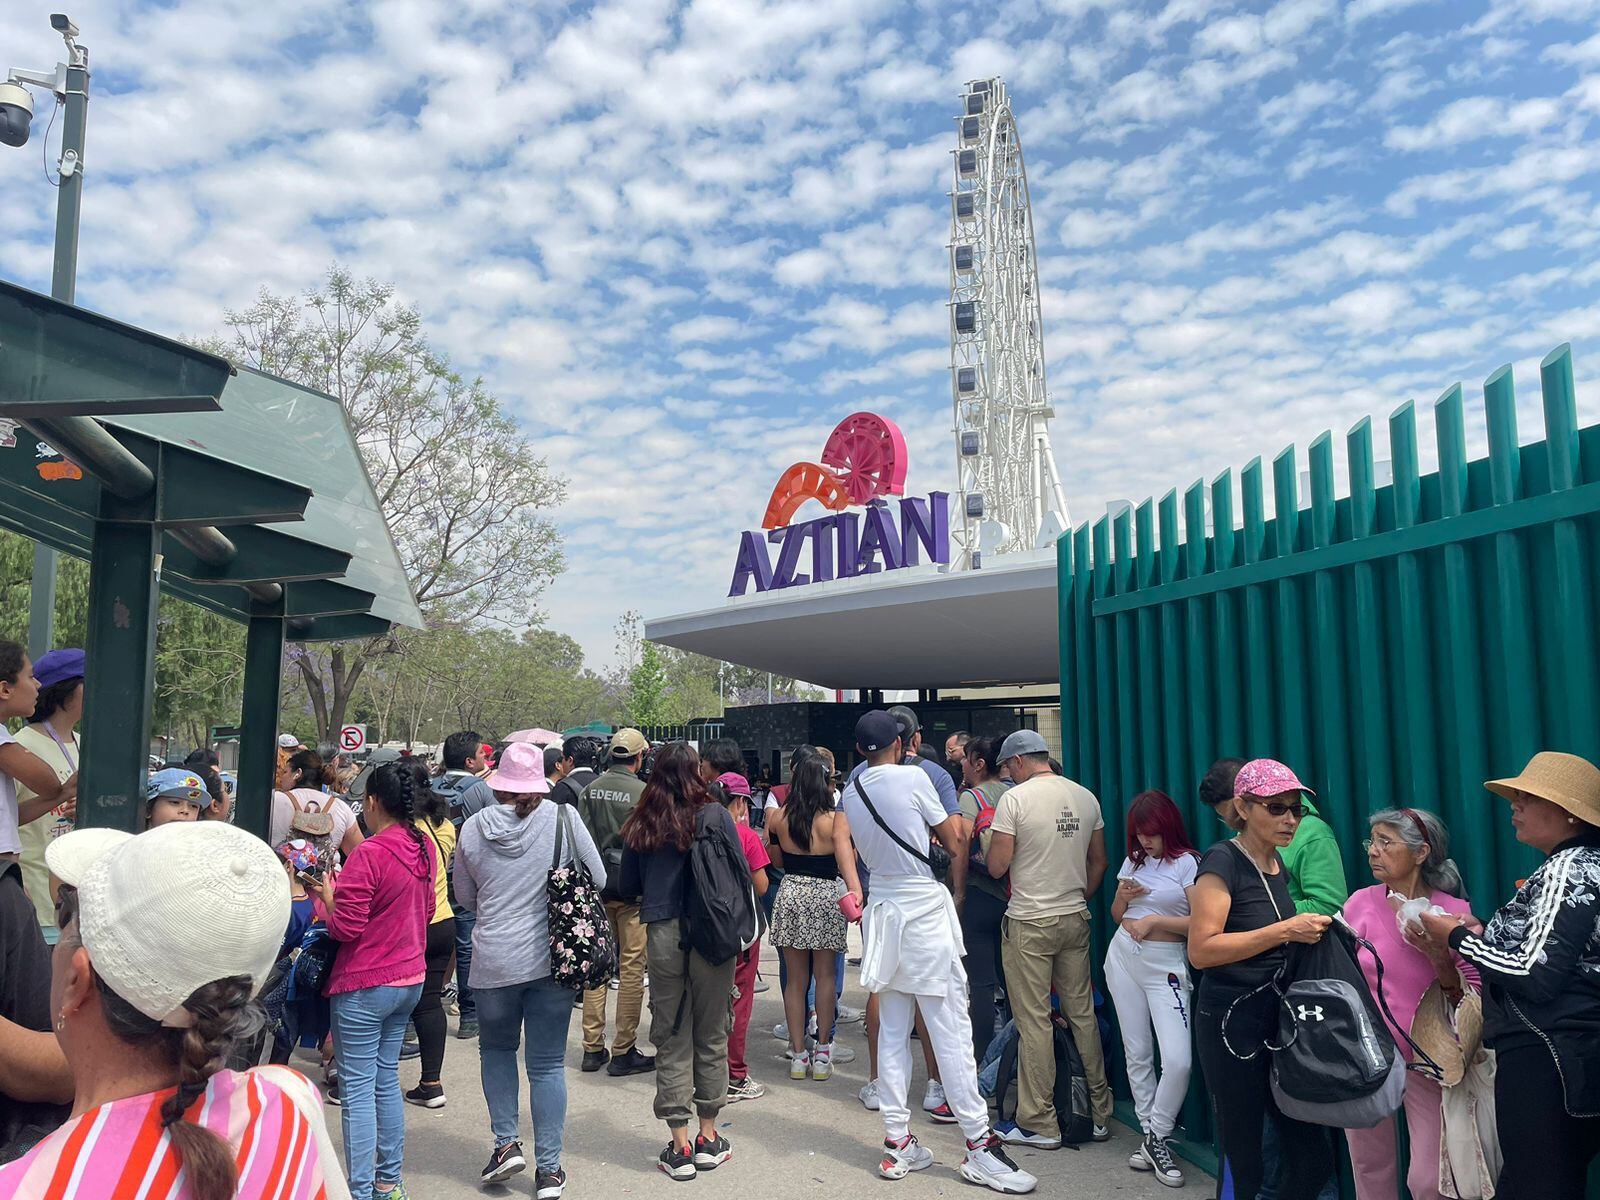 Es recomendable llegar temprano a Parque Aztlán para evitar las largas filas. (Foto: Luis Cárdenas Castillejos).